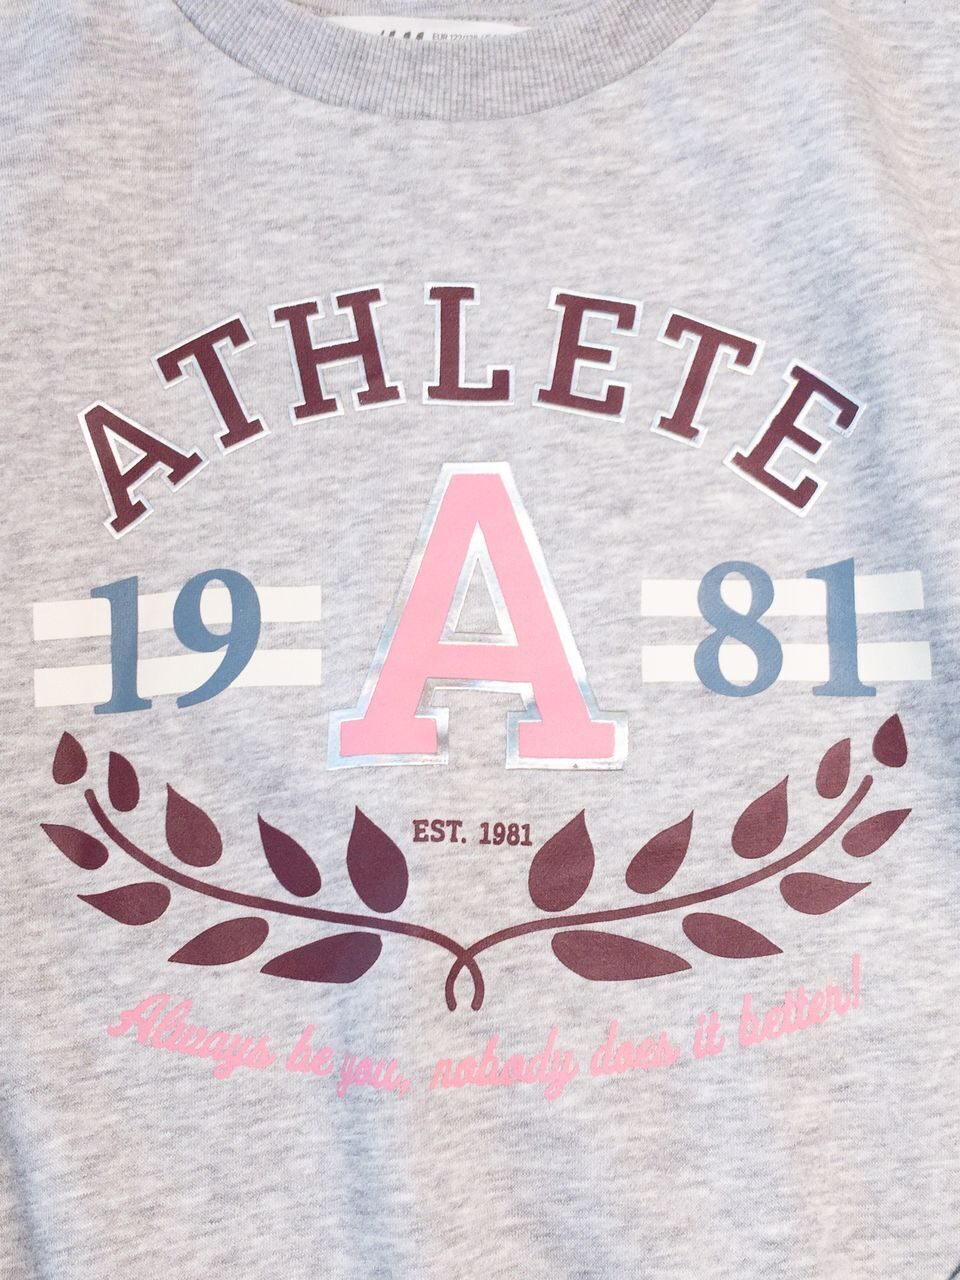 Свитшот с начесом для девочки цвет серый принт Athlete на рост 122/128 см 7-8 лет H&M